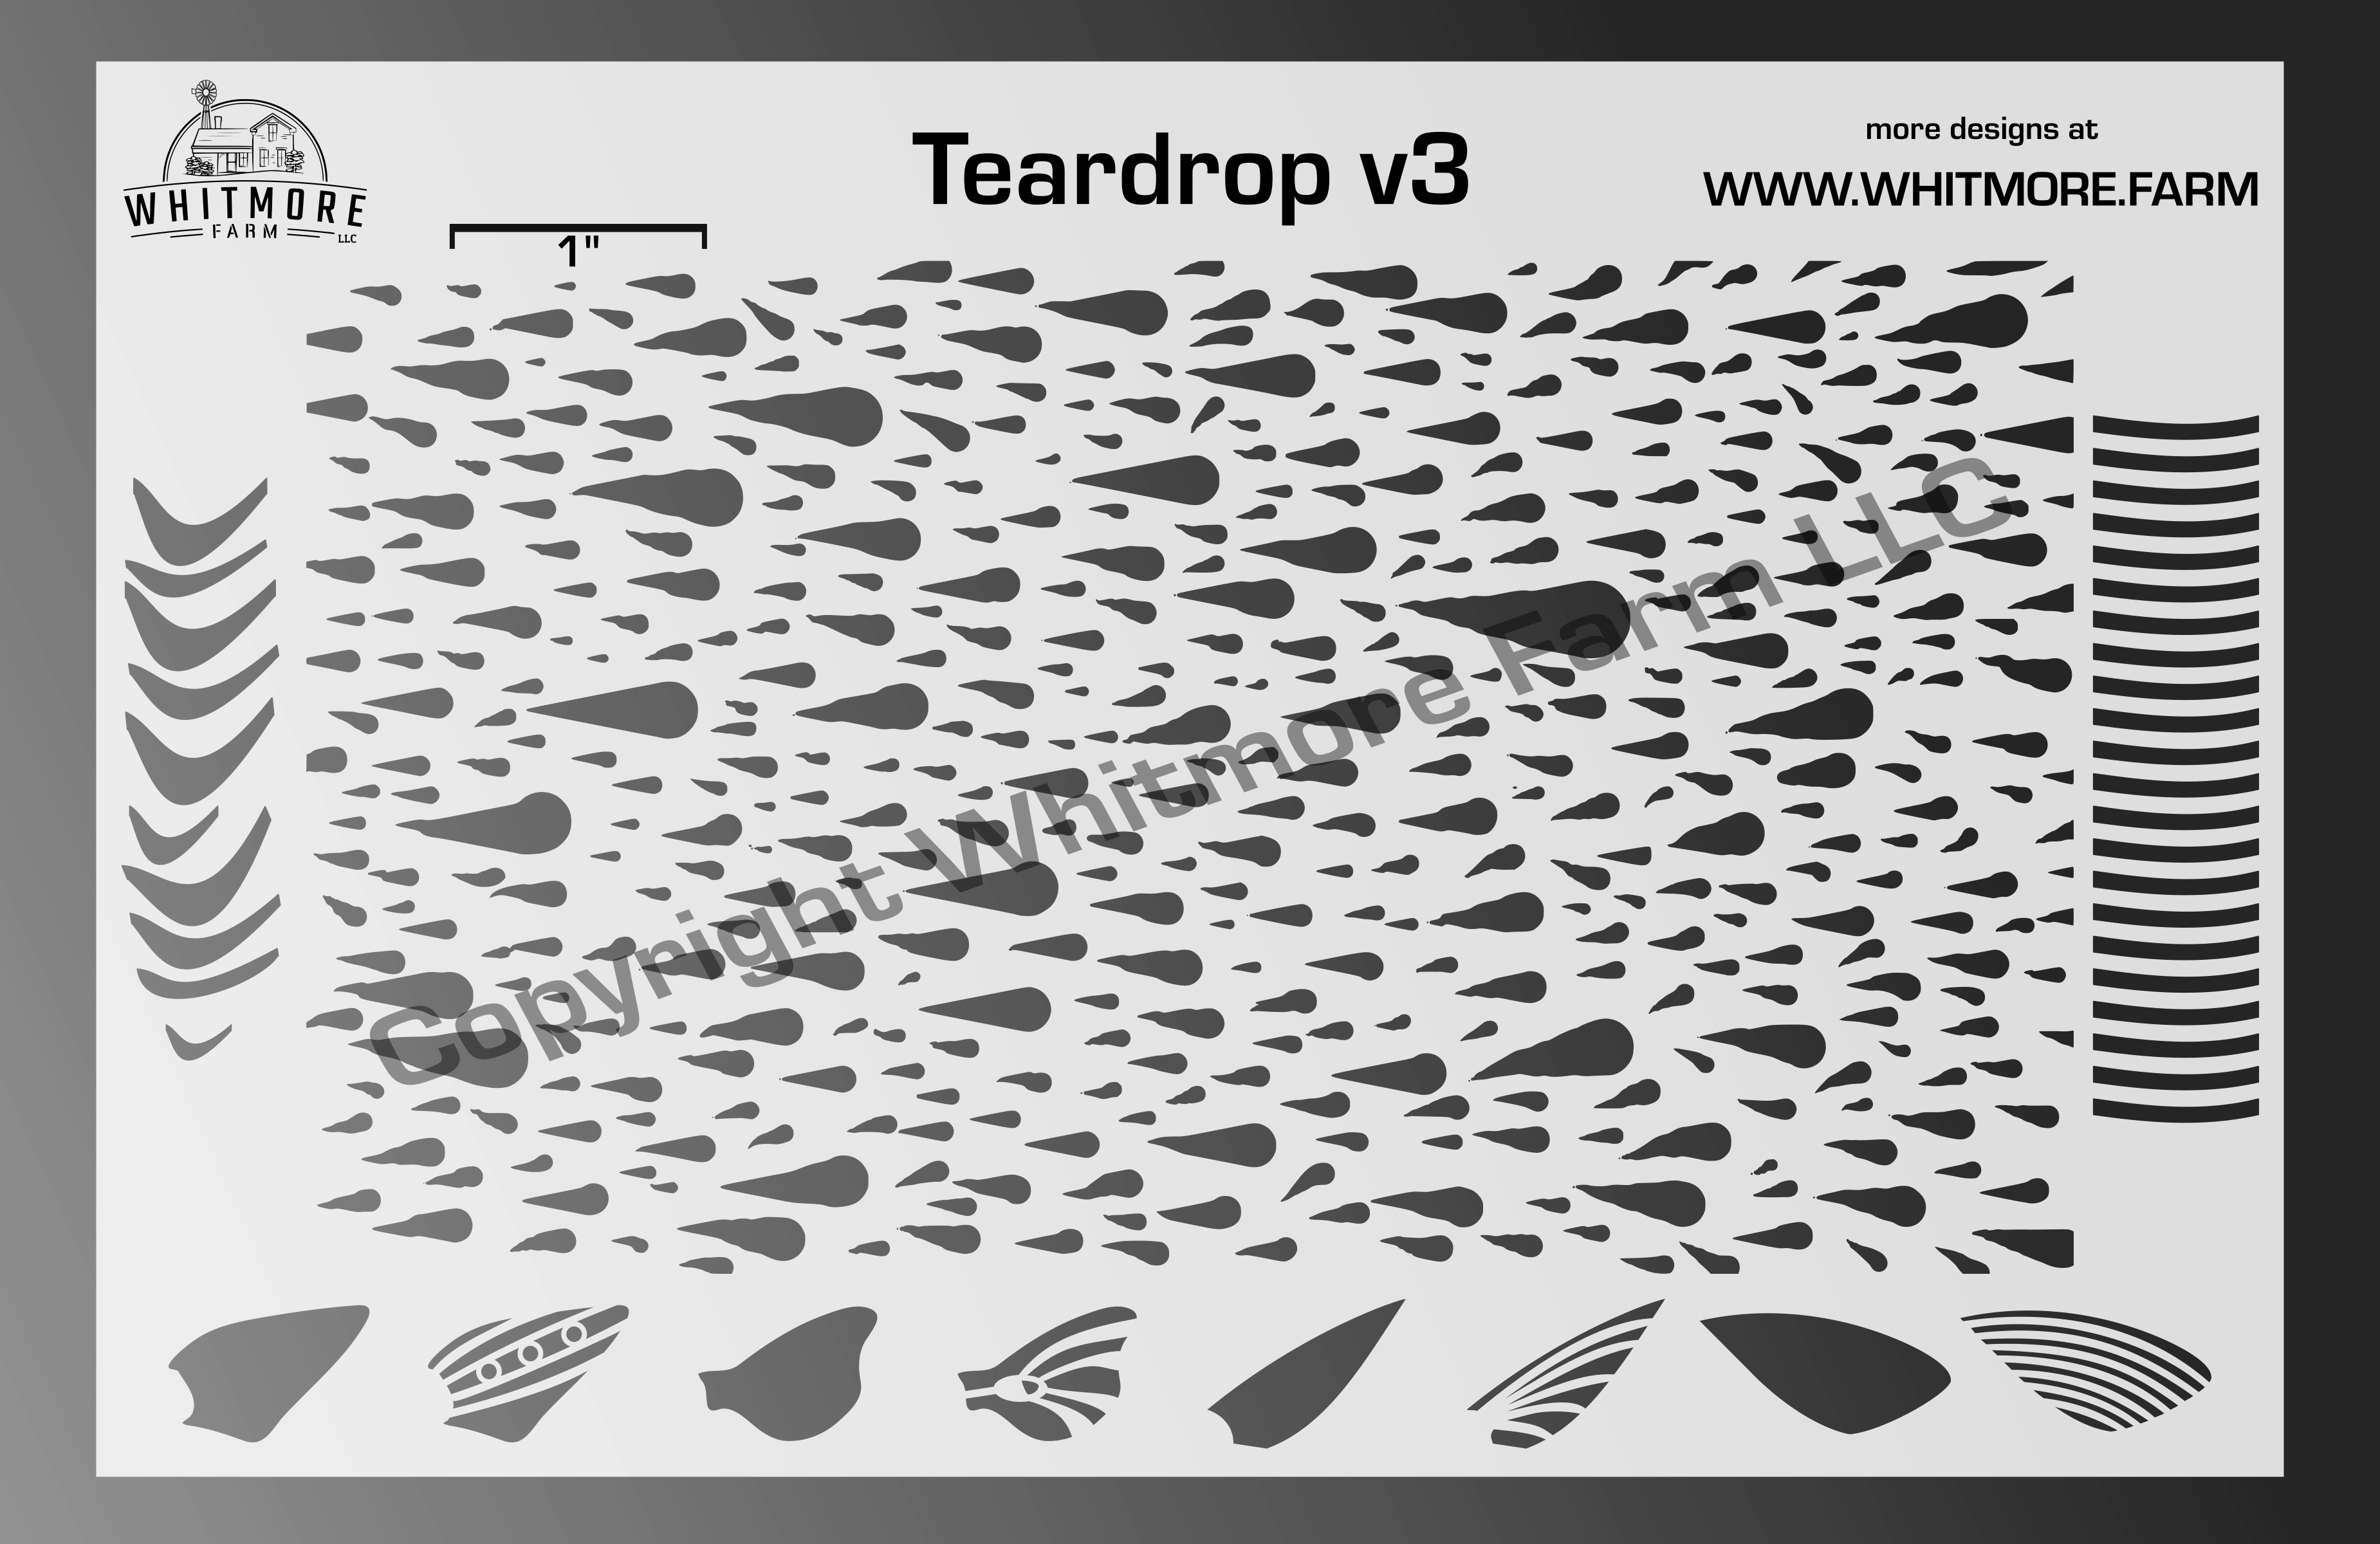 teardrop v3 mesh fishing lure airbrush stencil whitmore farm